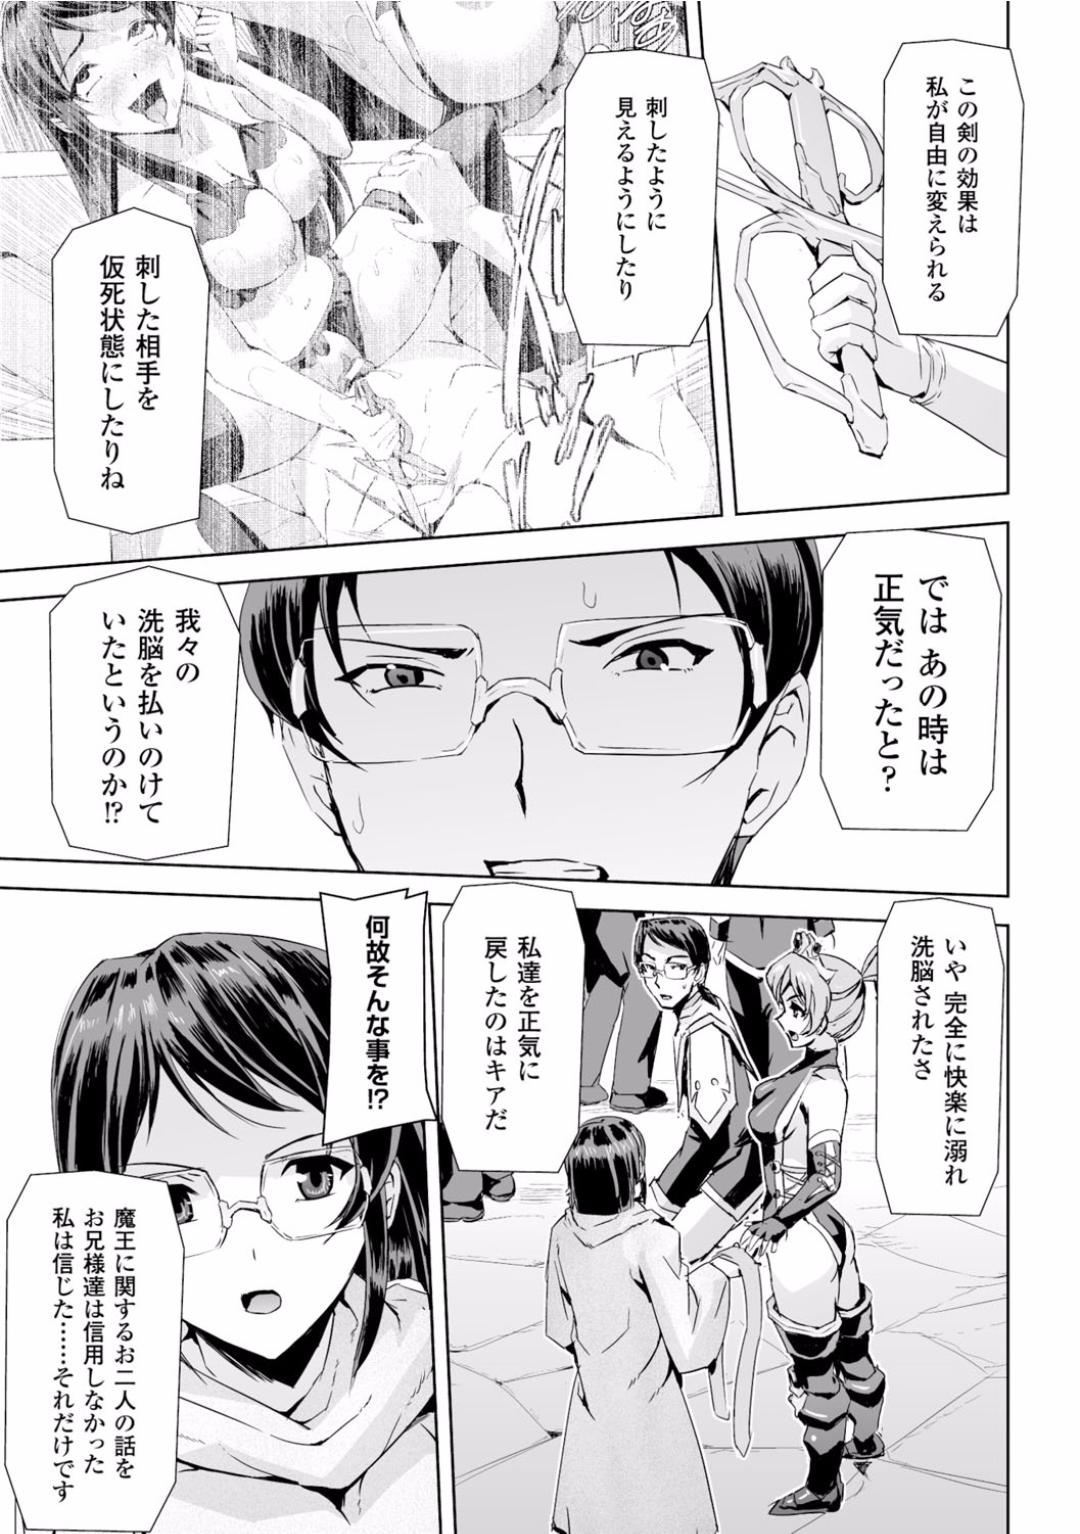 Seigi no Heroine Kangoku File Vol. 2 49